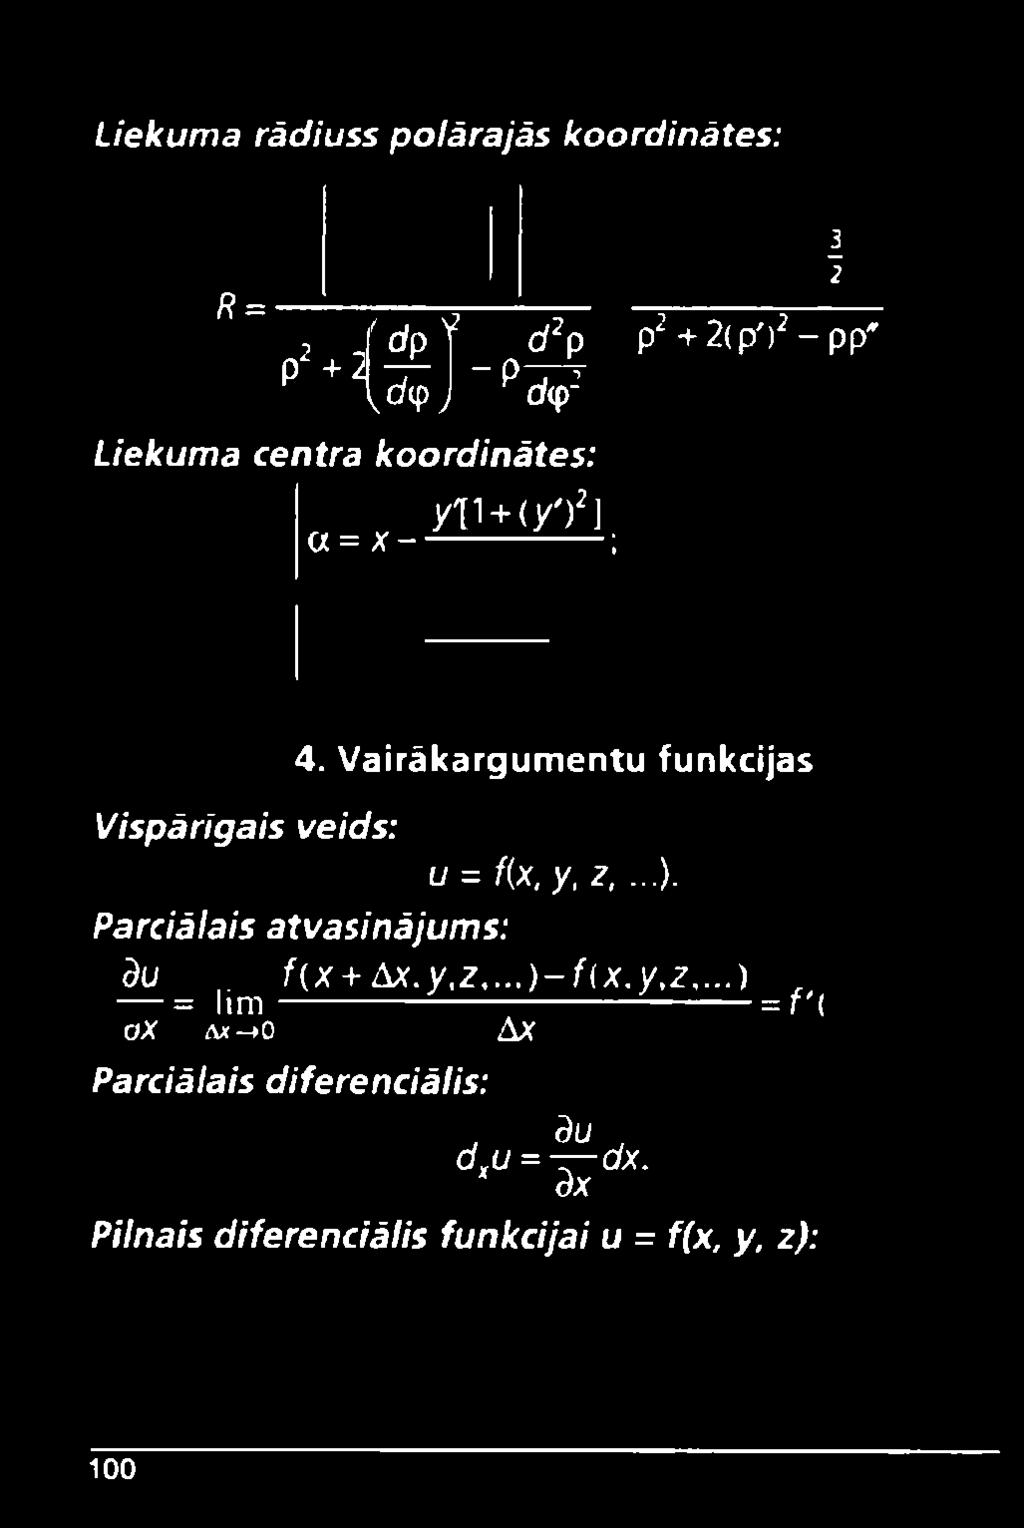 Vairākargumentu funkcijas u = f(x, y, 2,...). Parciālais atvasinājums: dil f(x + &X.y,2,.